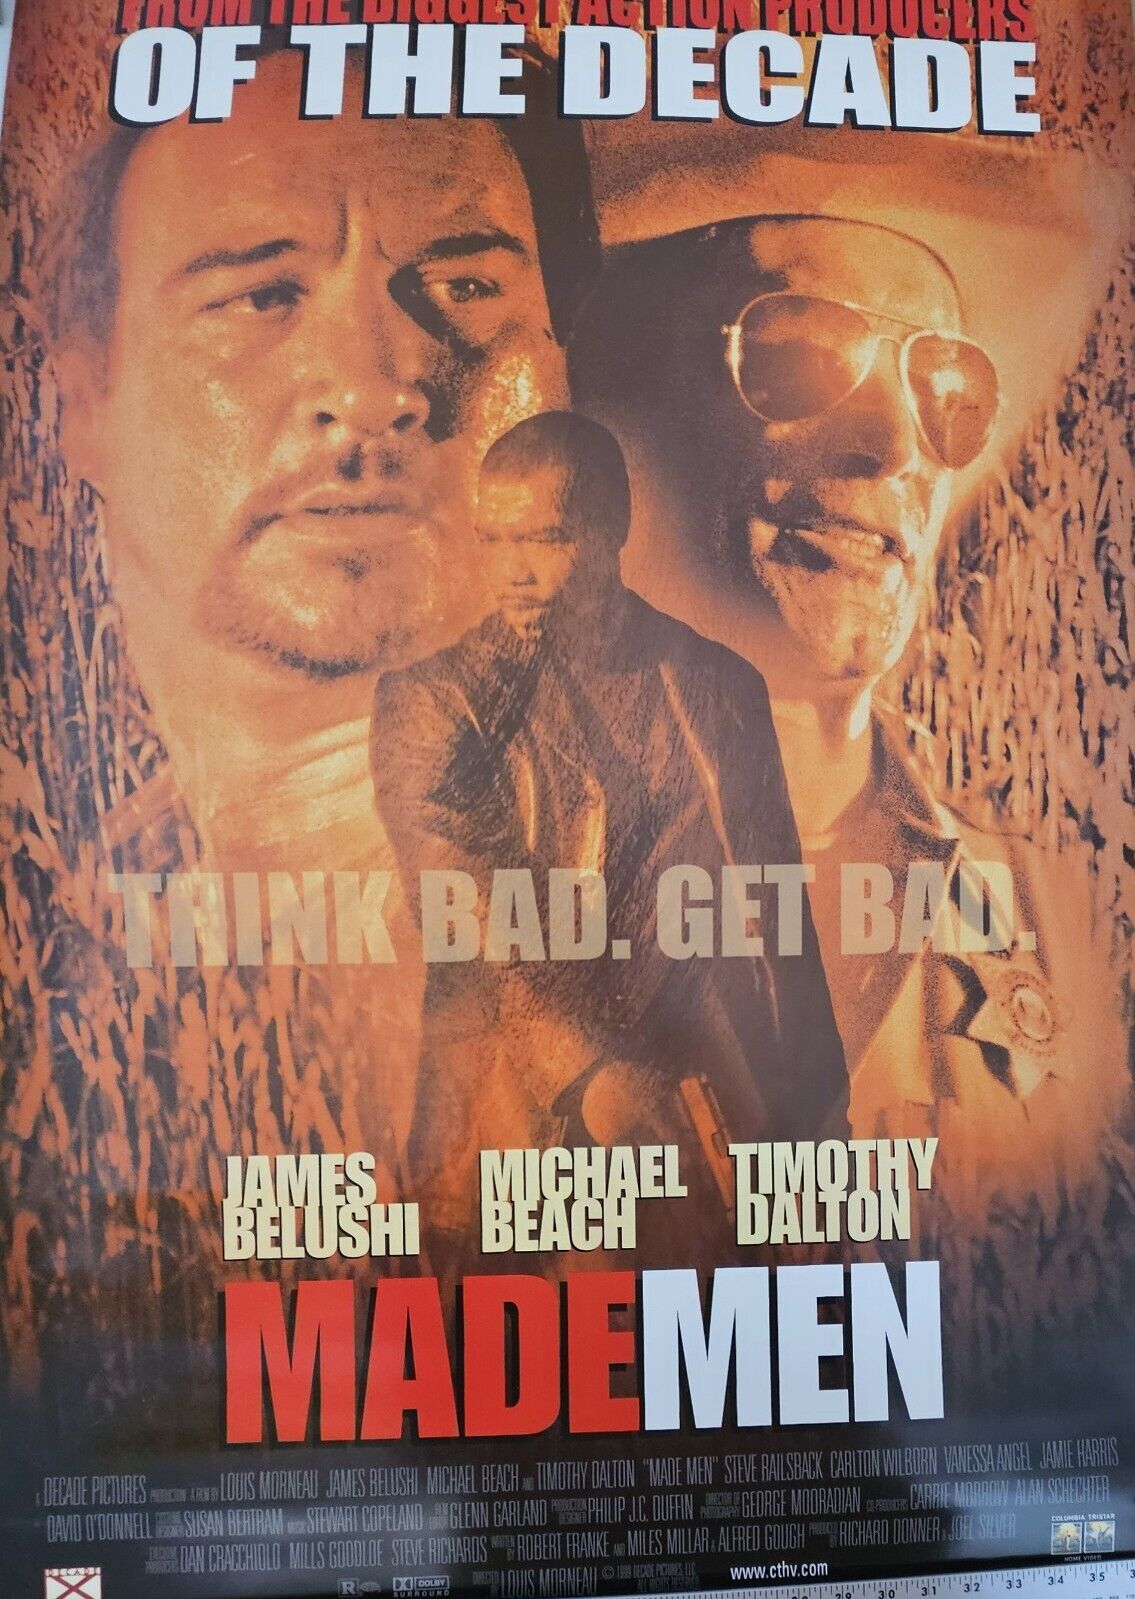 James Belushi Timothy Dalton  Made Men 27 x 39  DVD promotional Movie poster